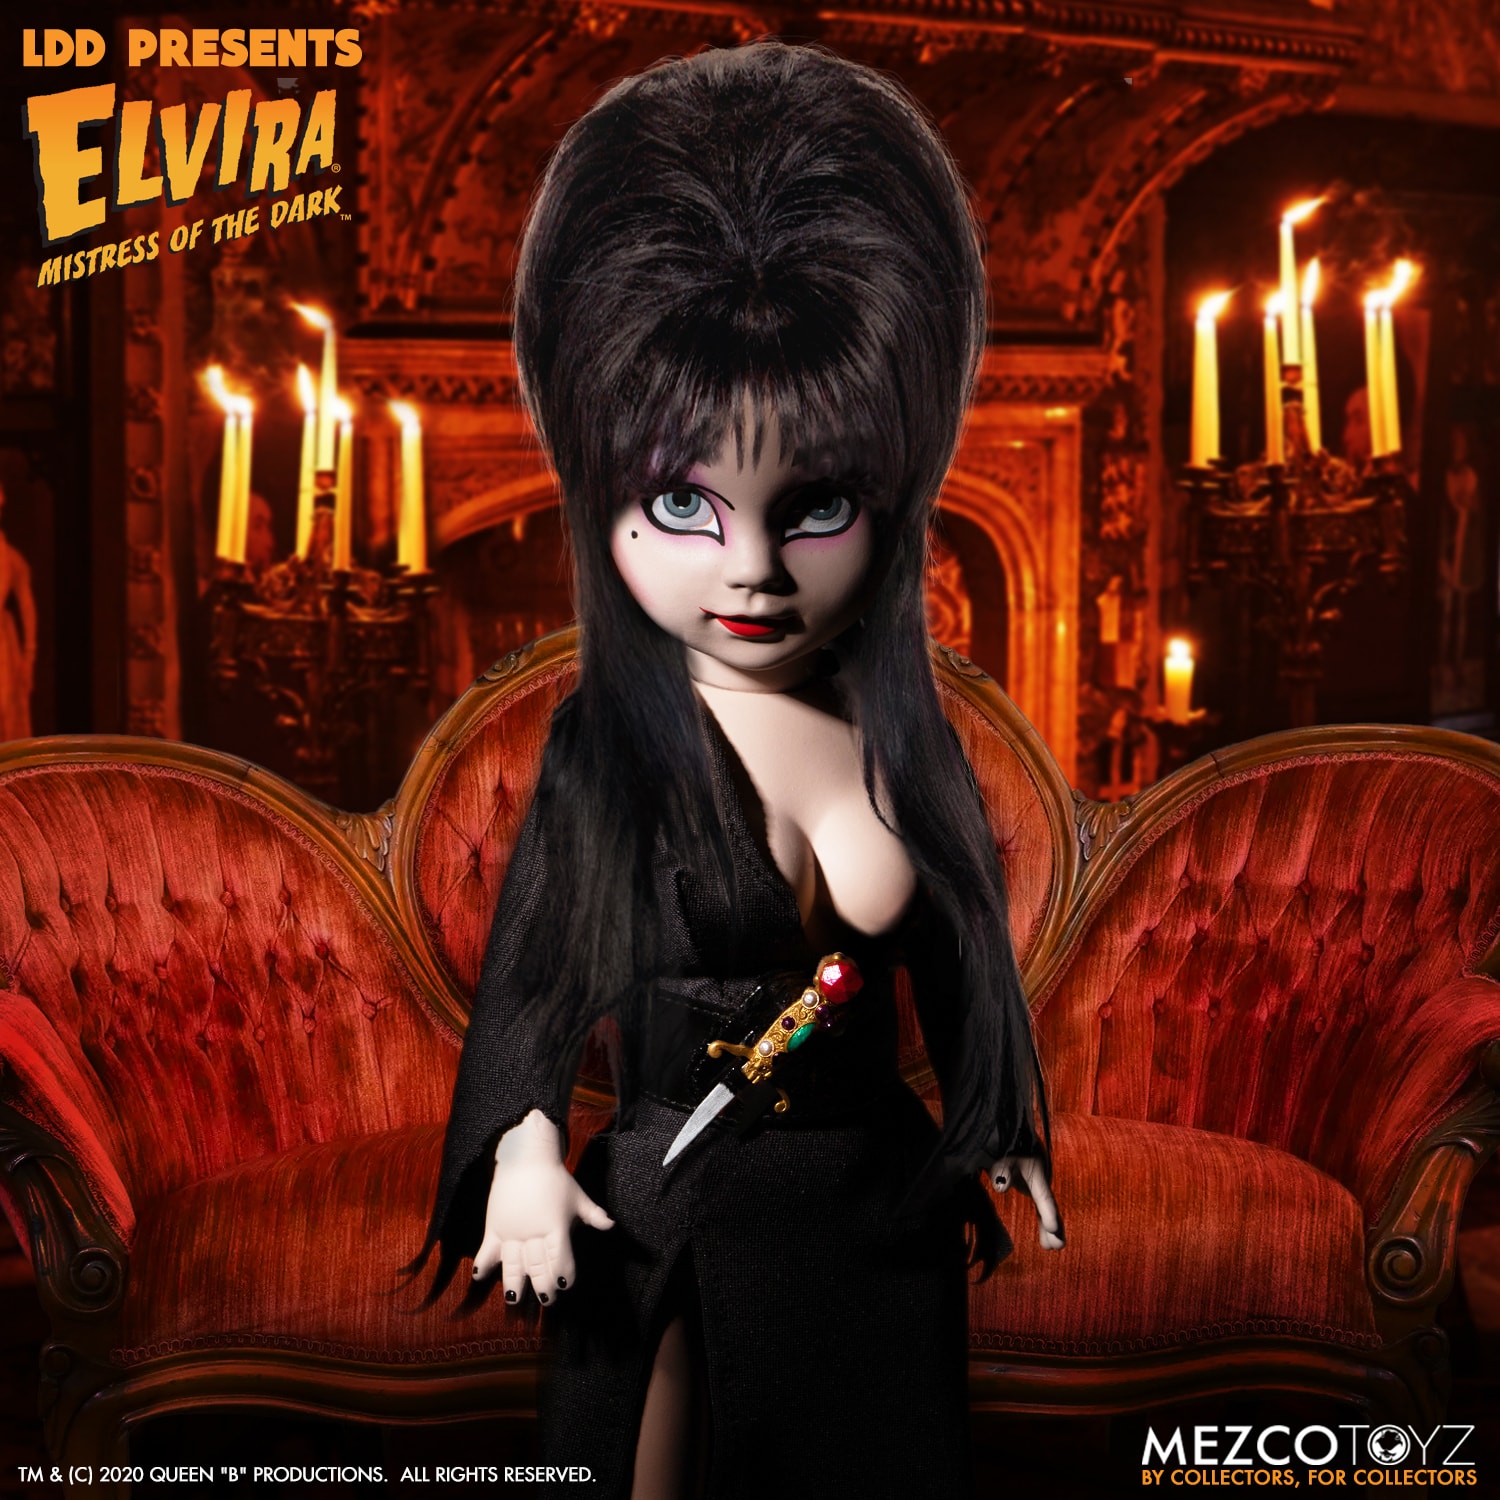 Mezco Living Dead Doll Elvira Doll